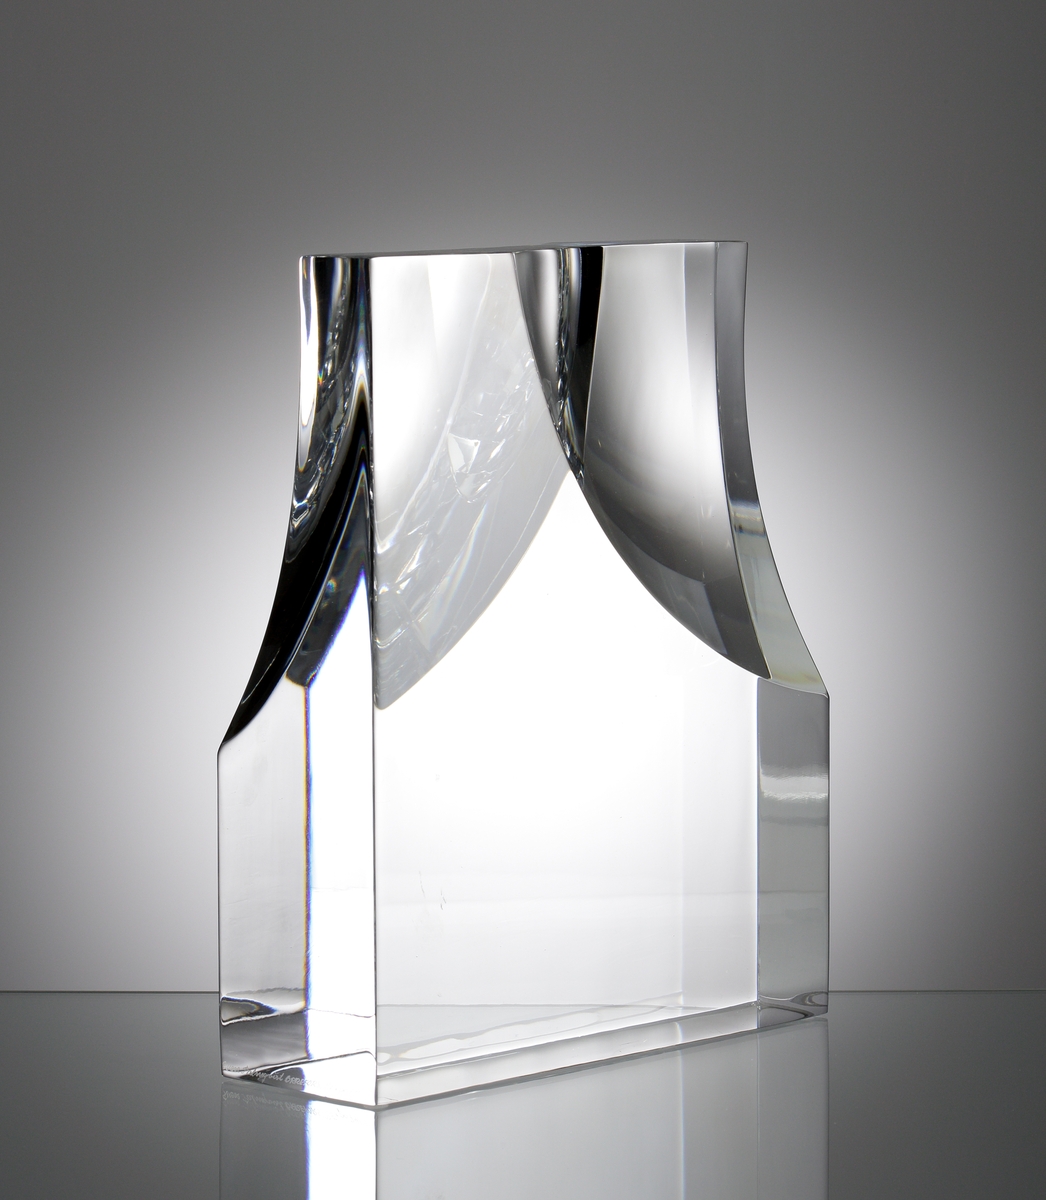 Formgivare: Sven Palmqvist. Glasskulptur, stående rätblocksform. Utförd med slipad konkav yta i främre och bakre vägg.